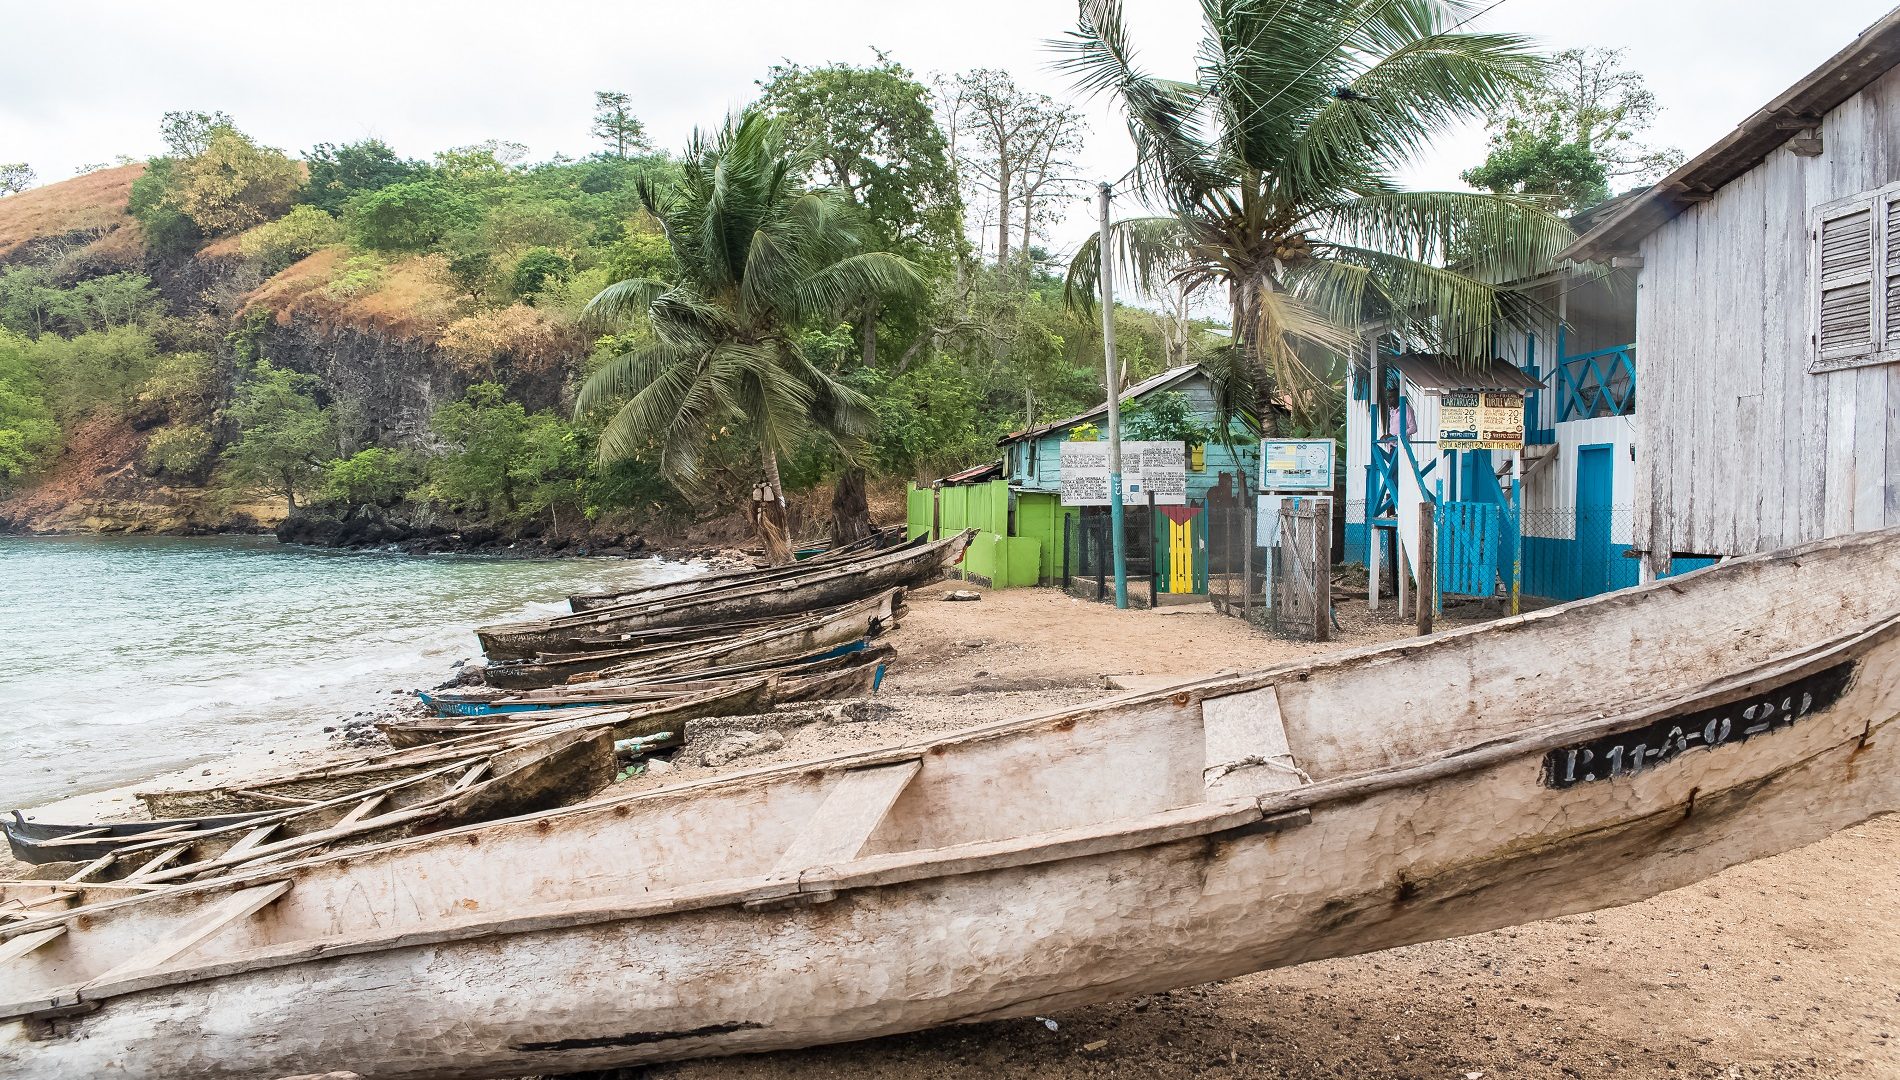 Sao Tomé e Principe: alla scoperta di arcipelago sconosciuto